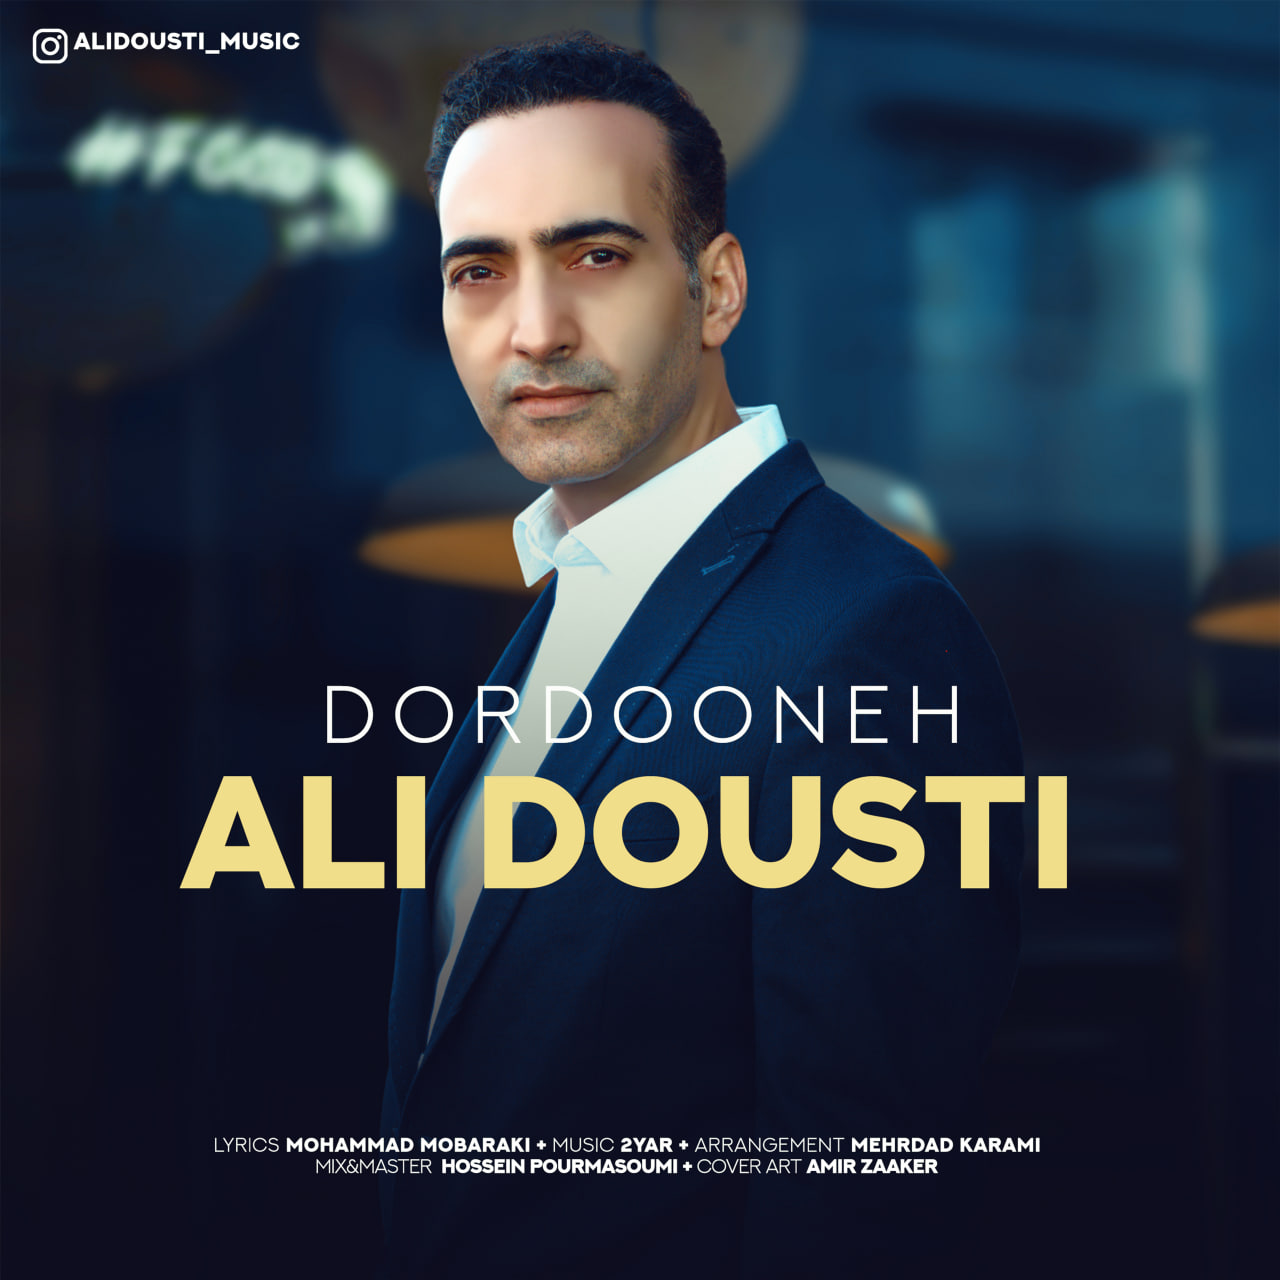 Ali Dousti – Dordooneh